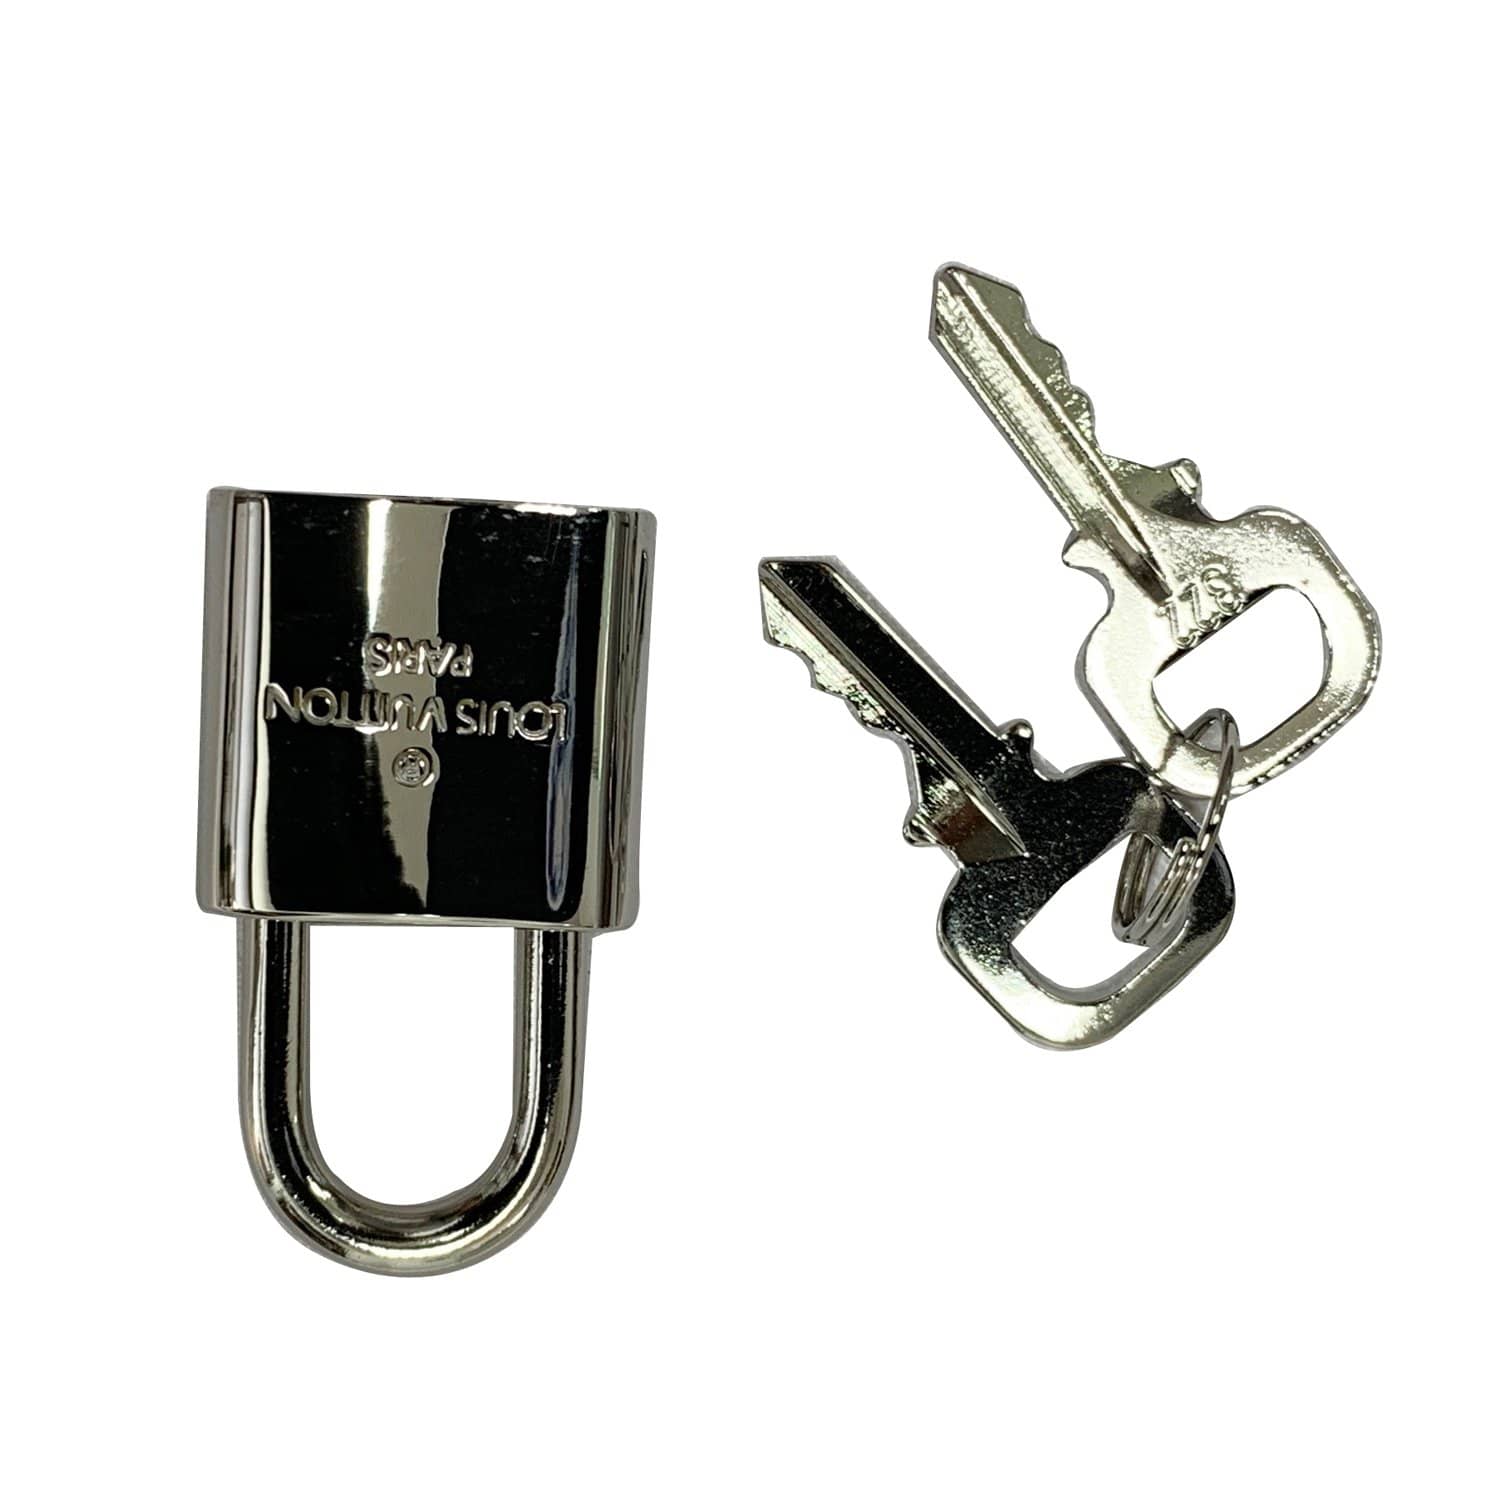 Louis Vuitton Louis Vuitton Silver Tone Padlock + 2 Keys